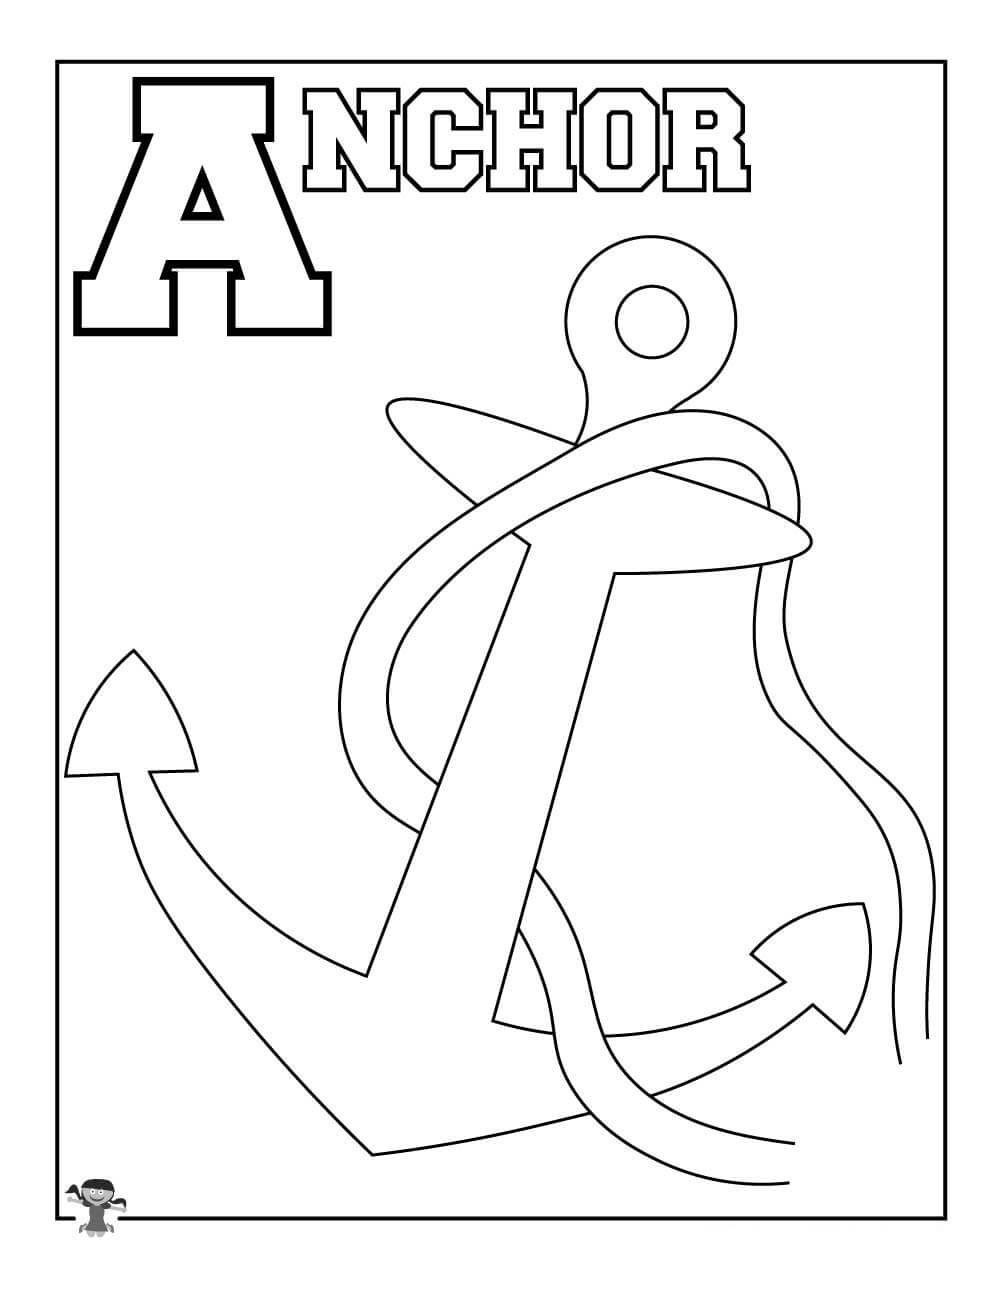 La letra A simple es para Anchor